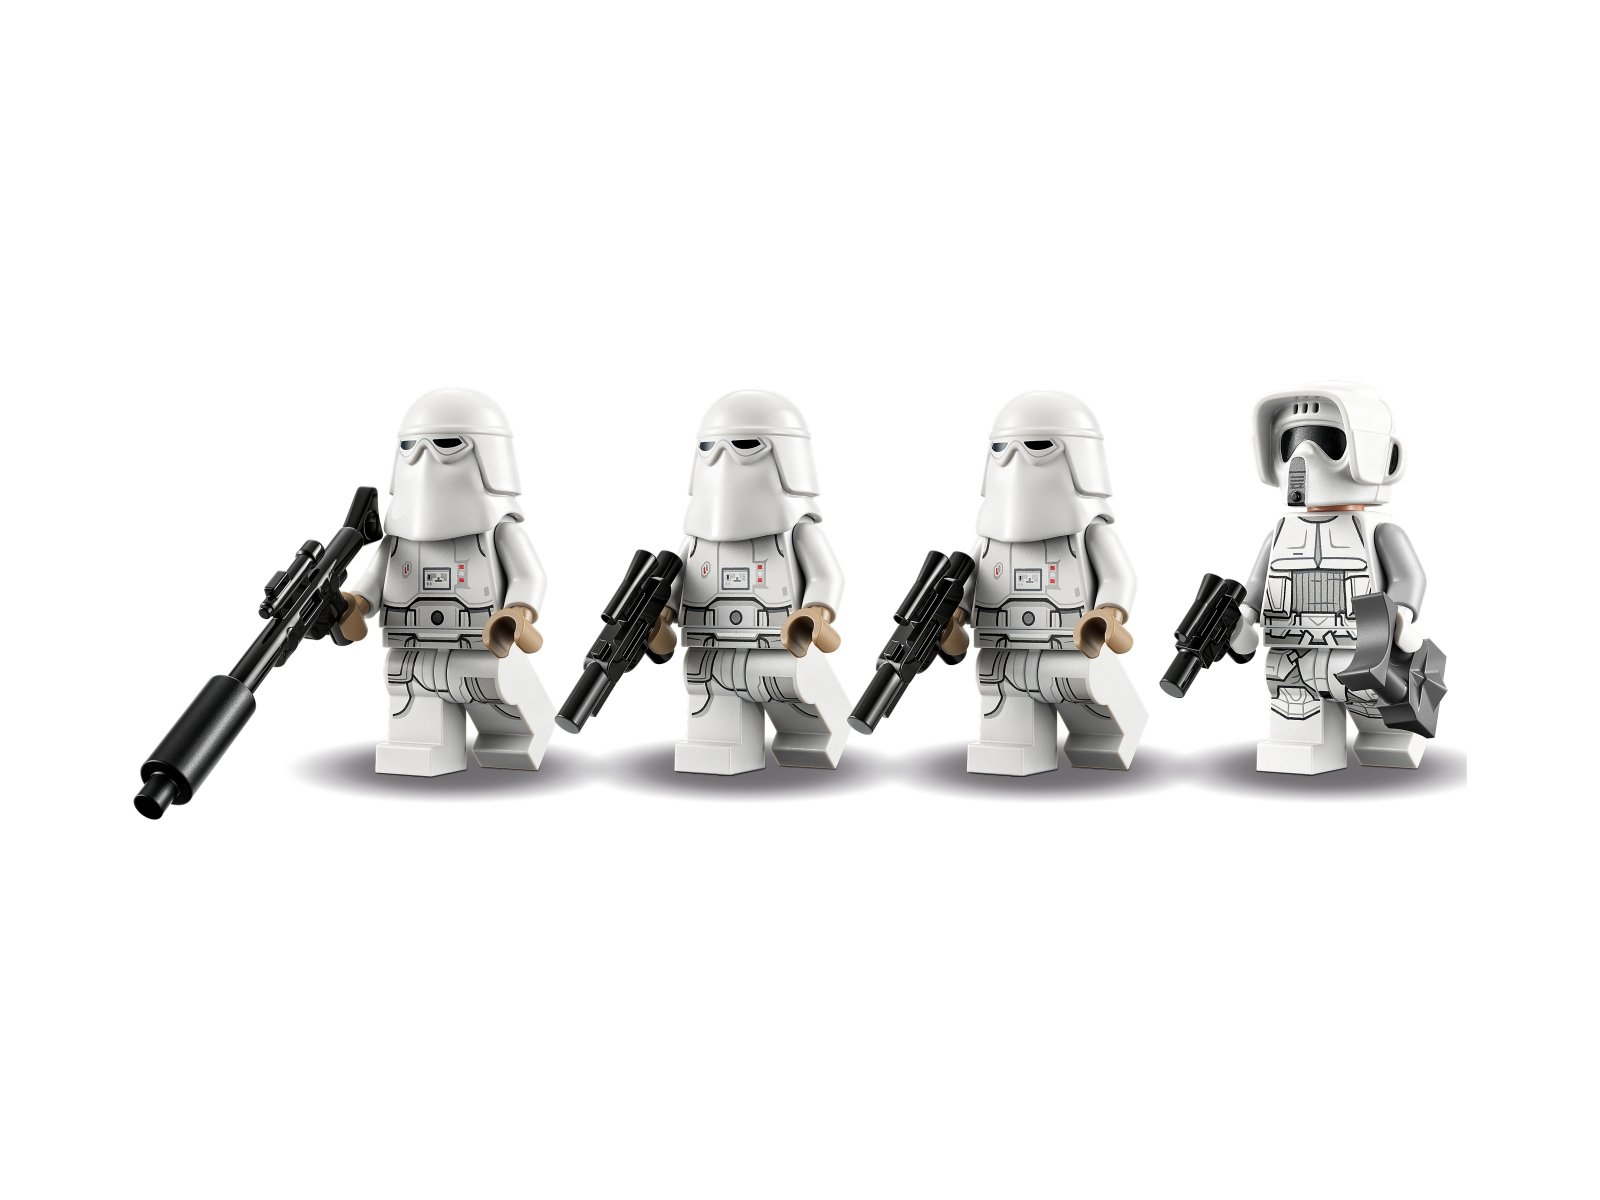 LEGO Star Wars 75320 Zestaw bitewny ze szturmowcem śnieżnym™